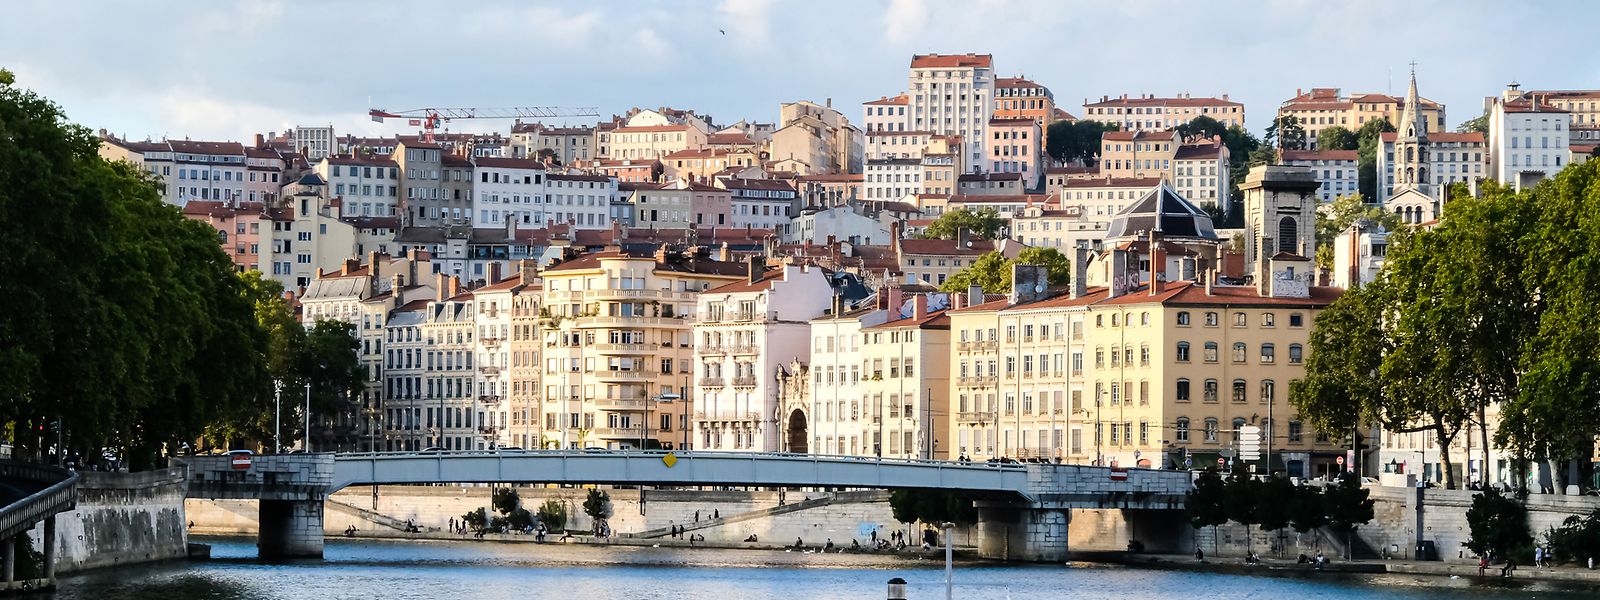 La Saône et son festival de ponts traversent le flamboyant panorama des quartiers du Vieux Lyon.